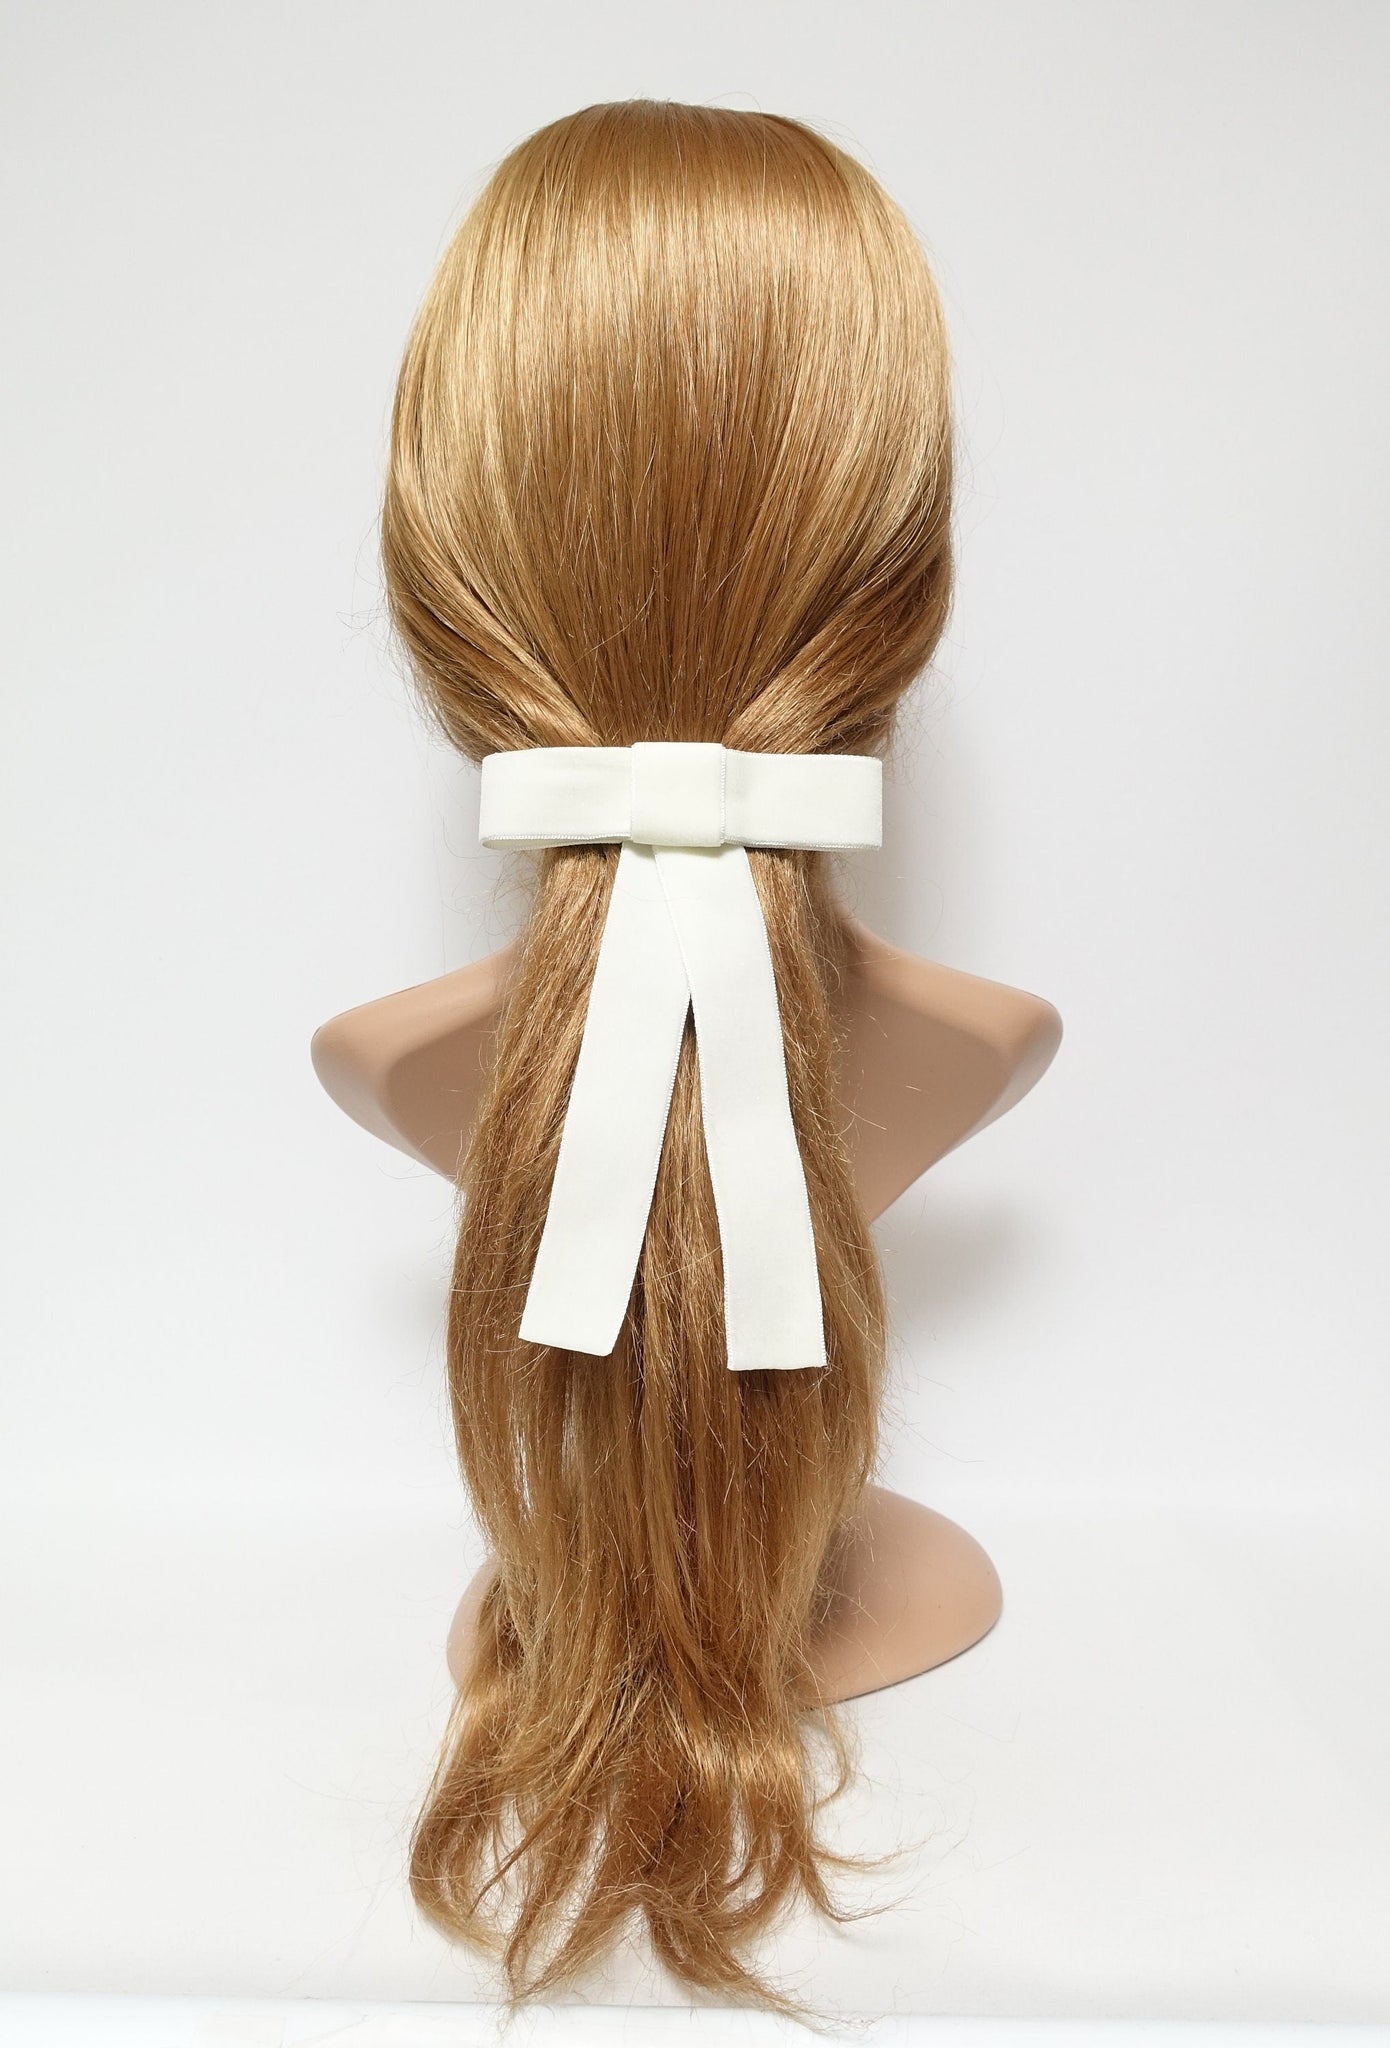 veryshine.com Barrette (Bow) Cream Velvet bow simple stylish black velvet hair accessory 0.98 inch width